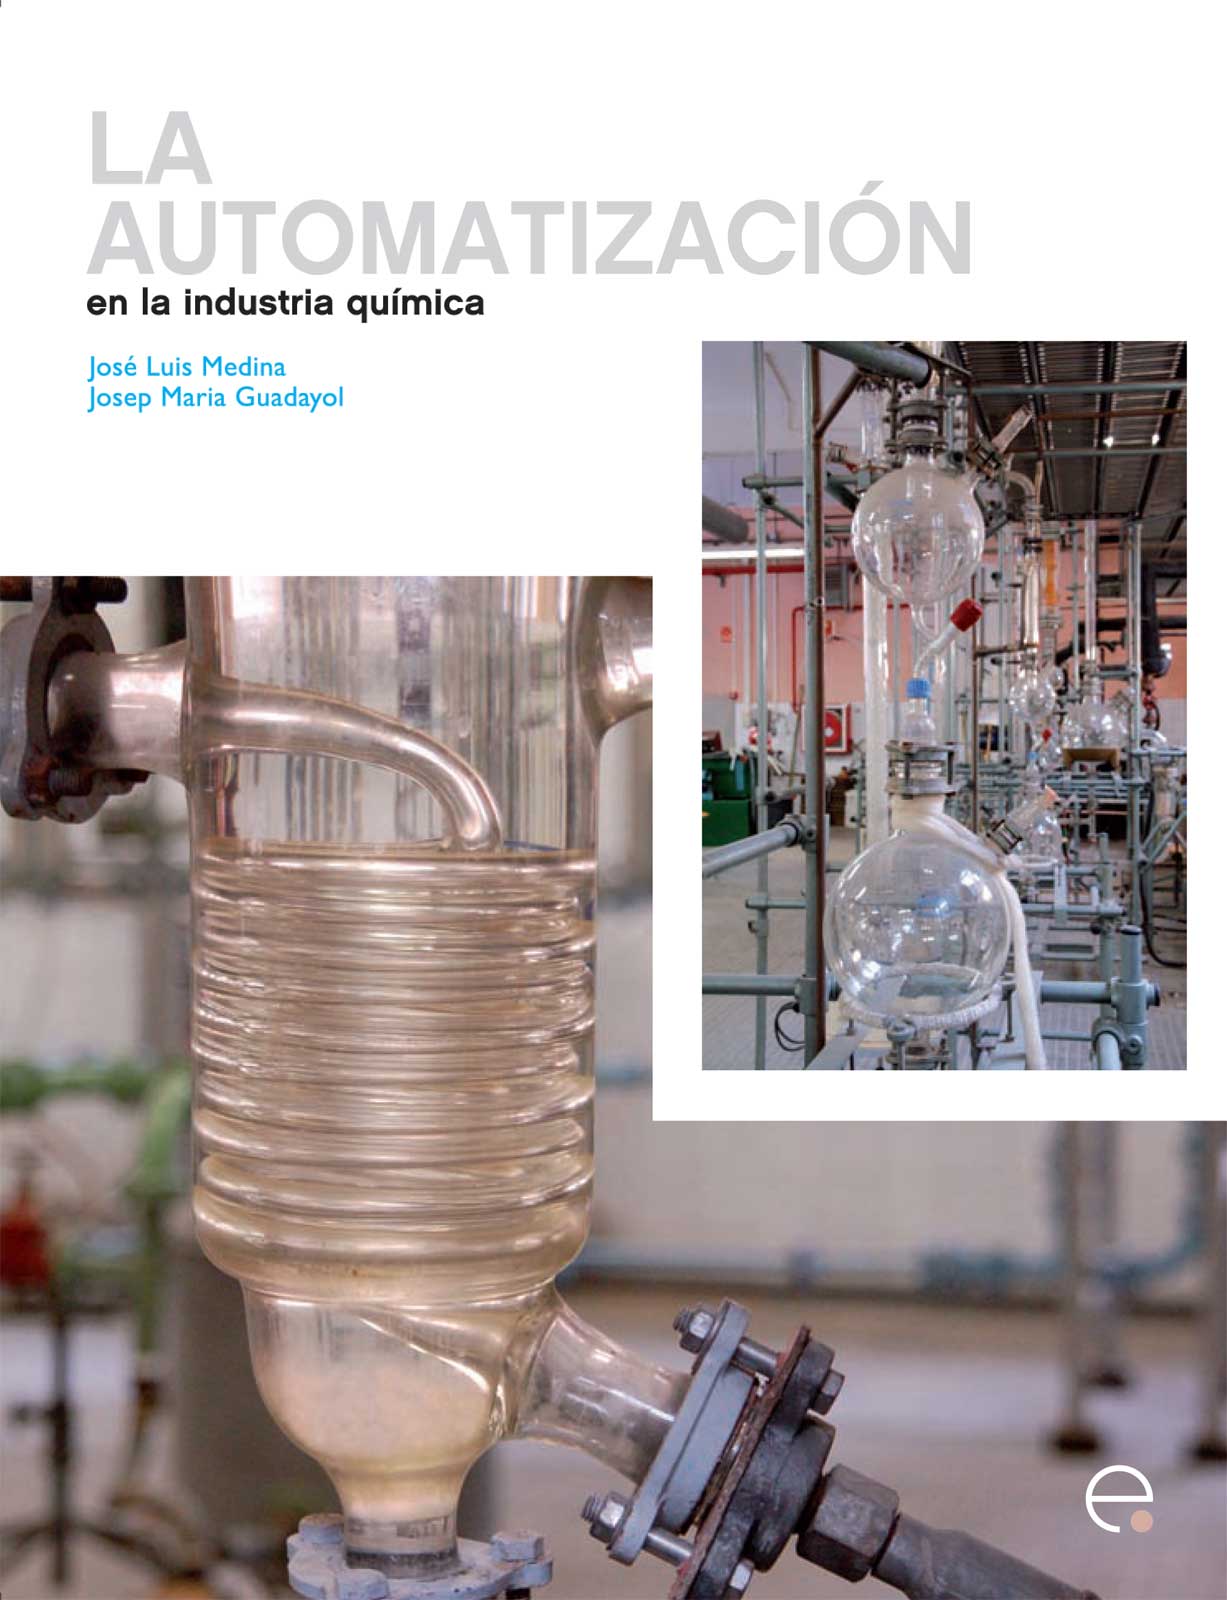 La Automatización en la industria química [Recurs electrònic] / José Luis Medina, Josep Maria Guadayol